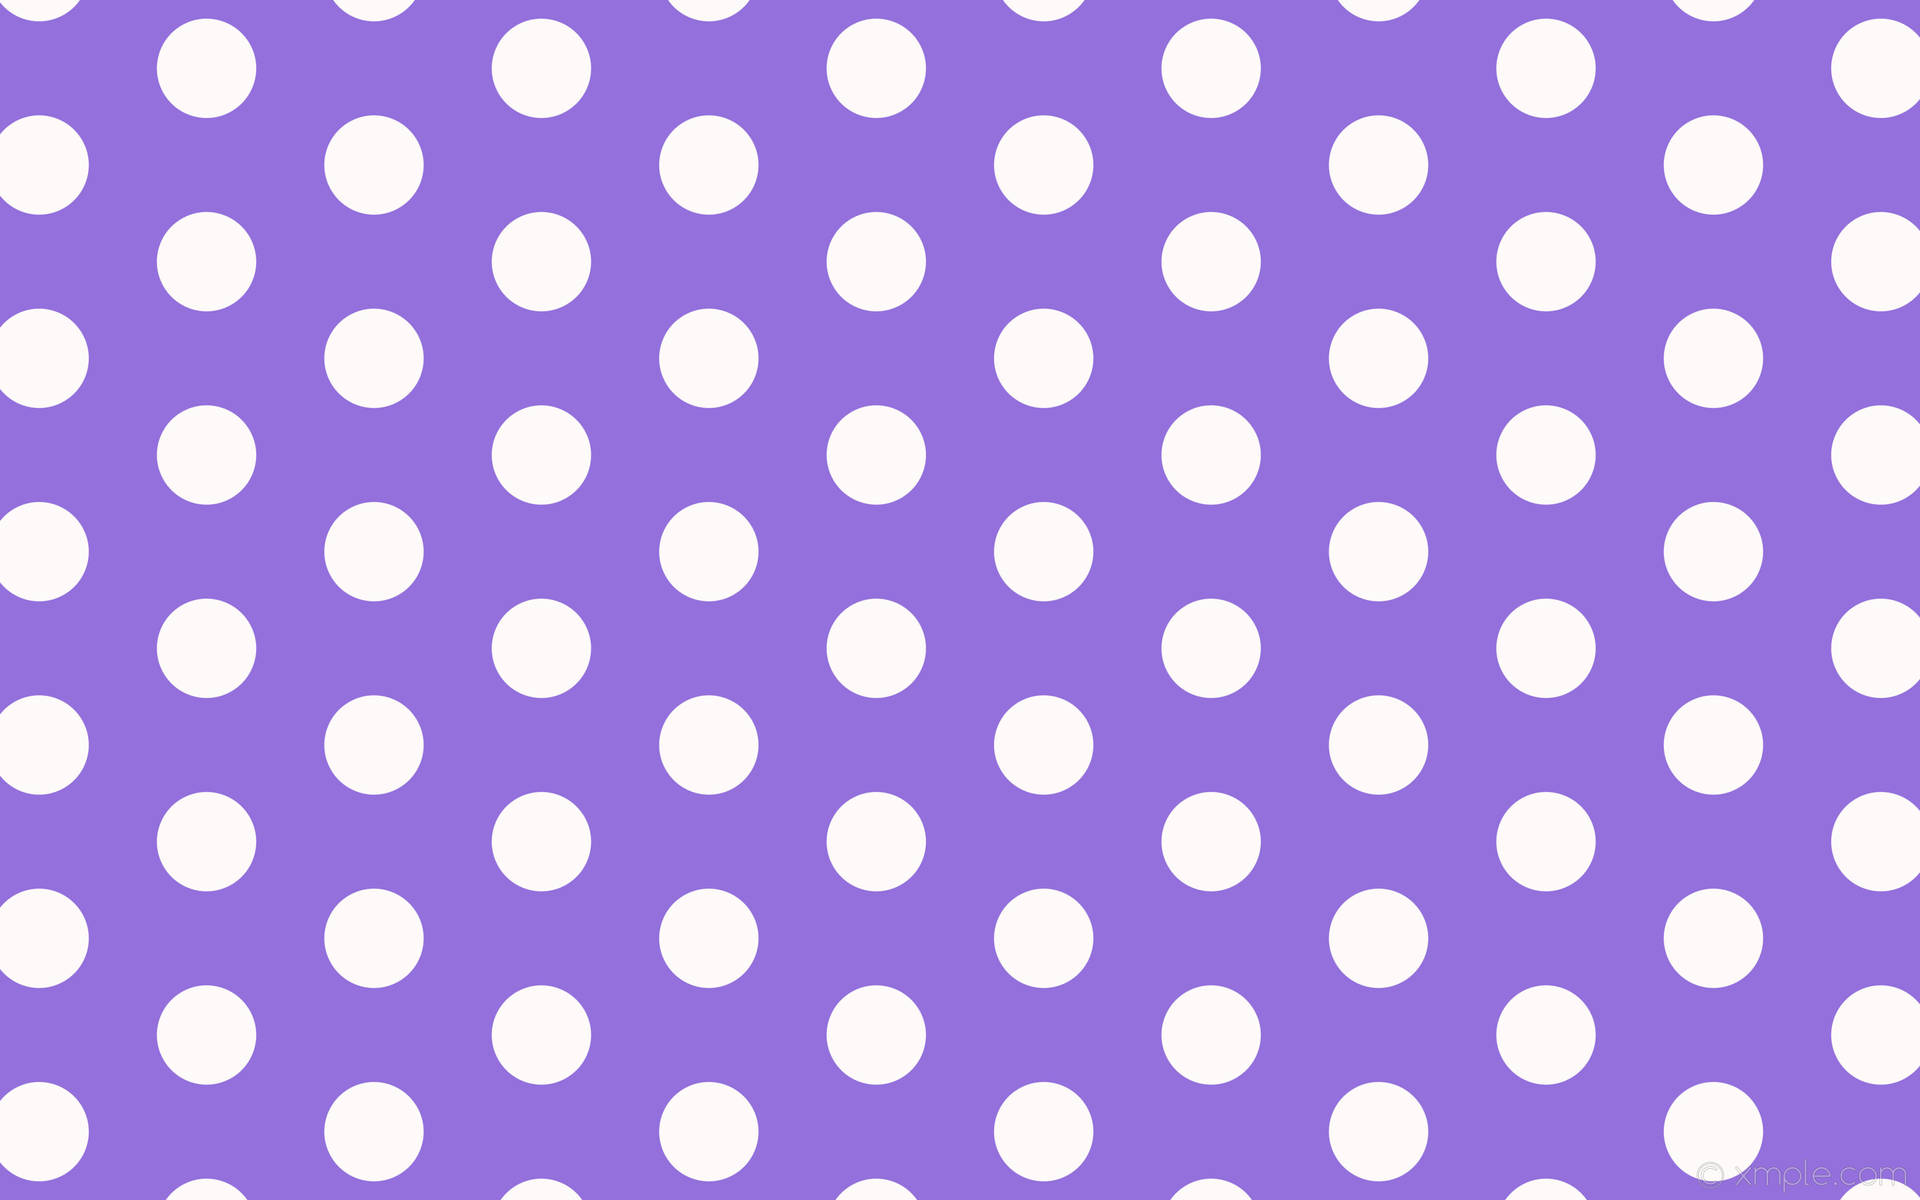 700 Free Polka Dots  Dots Images  Pixabay